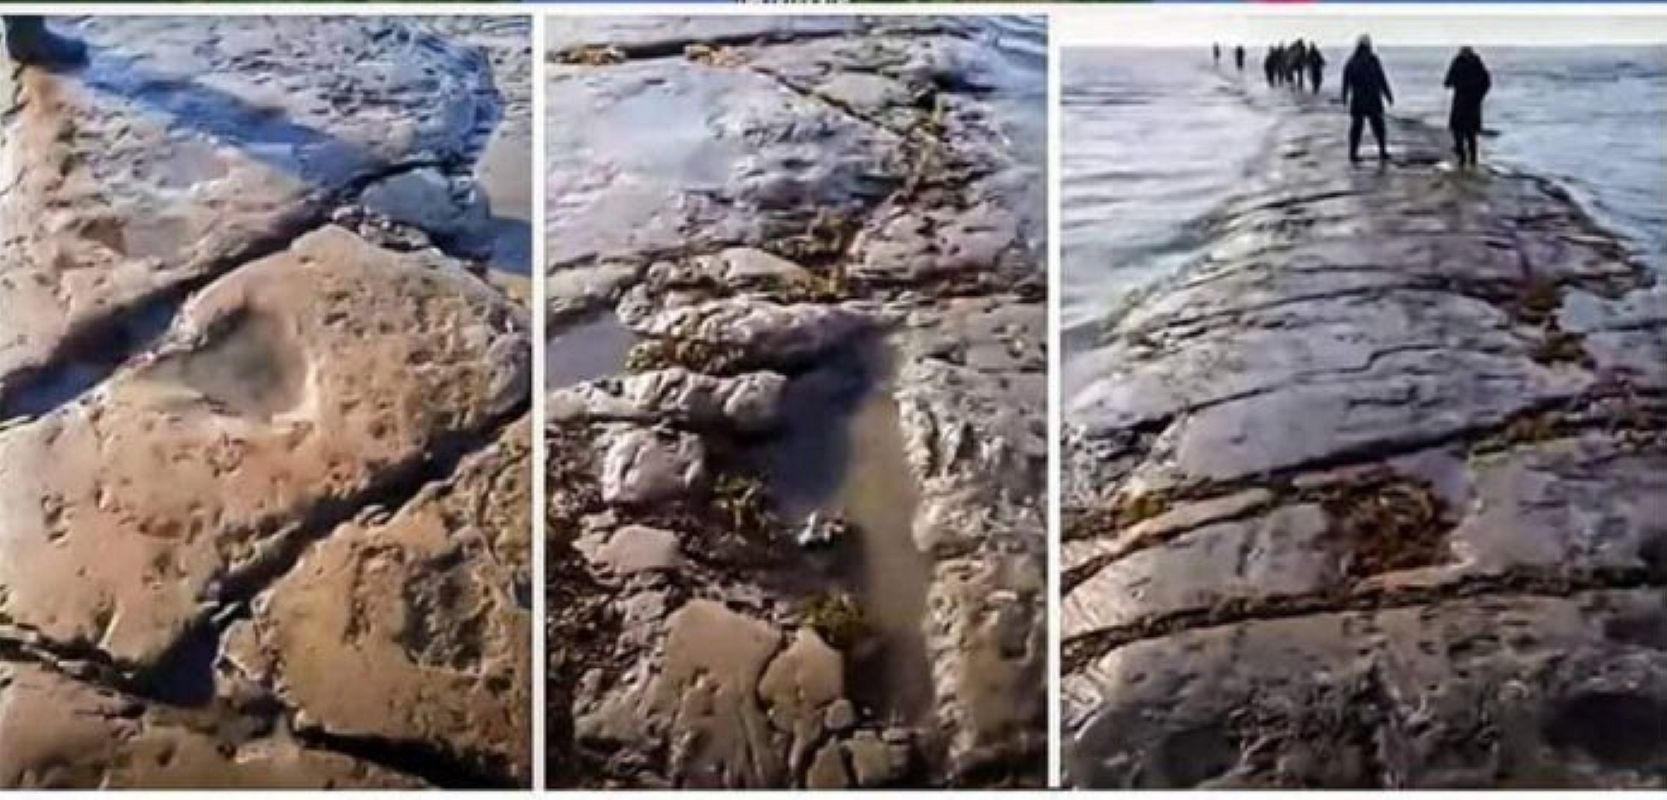 Extraño camino de piedra aparece debajo del océano ¿obra humana o de la naturaleza?